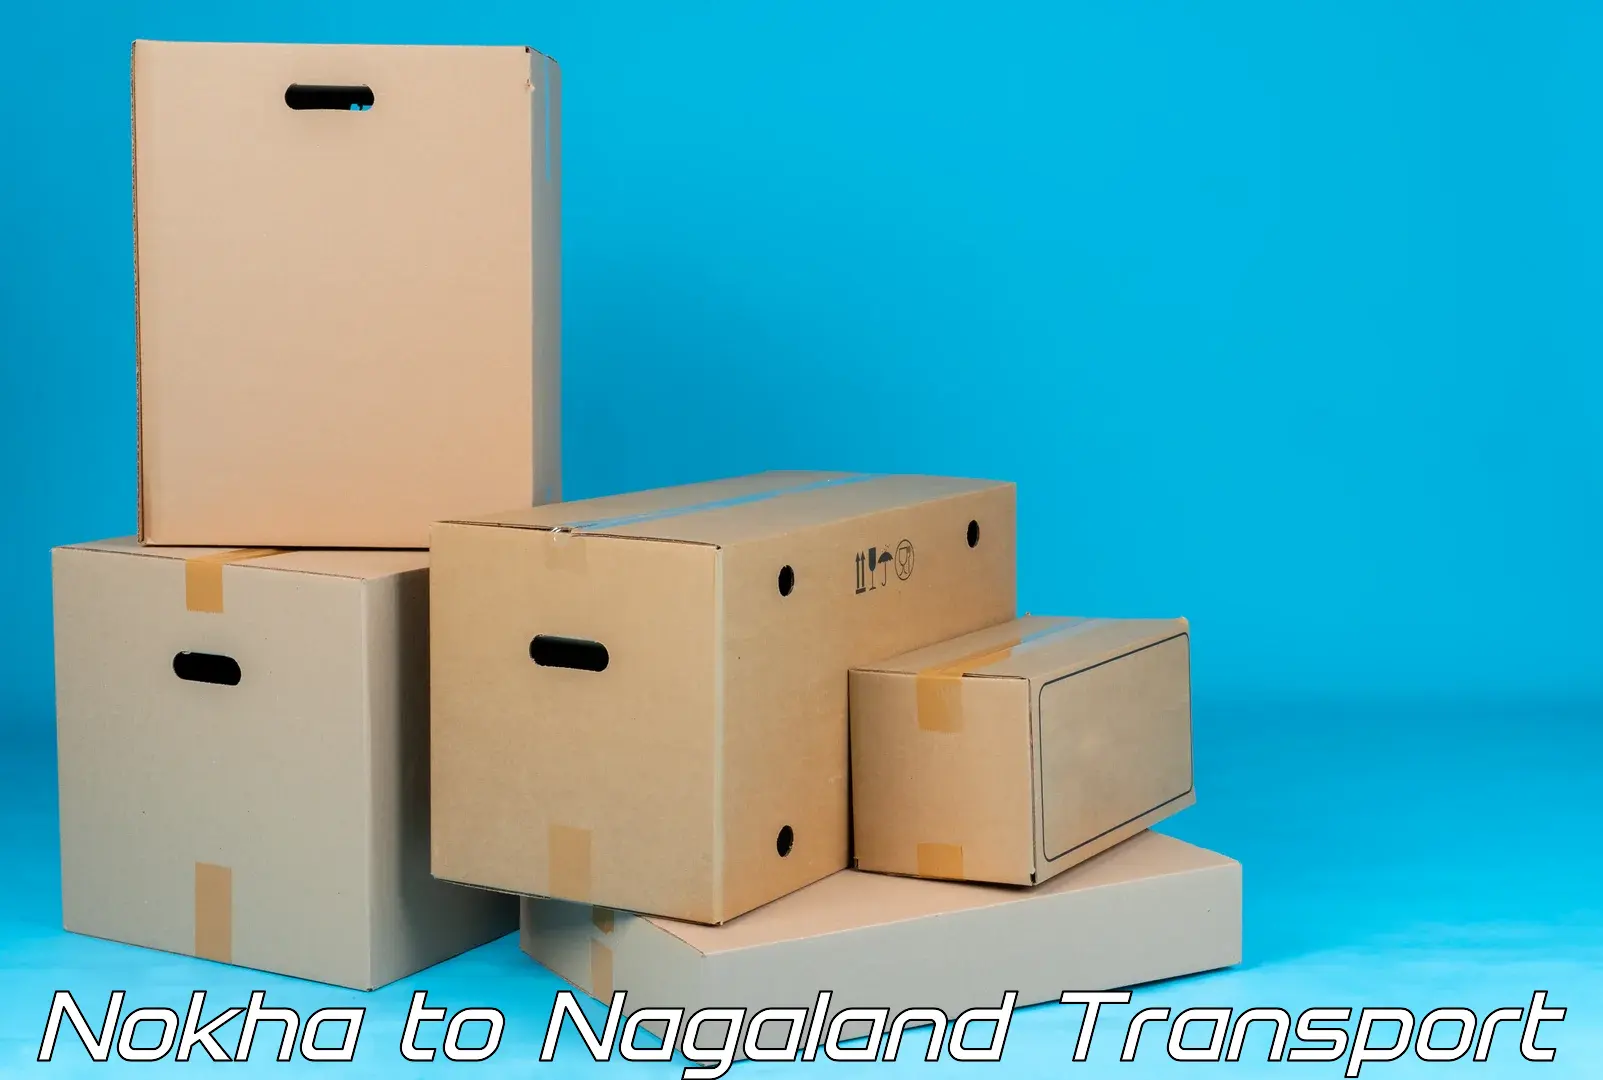 Pick up transport service Nokha to Nagaland